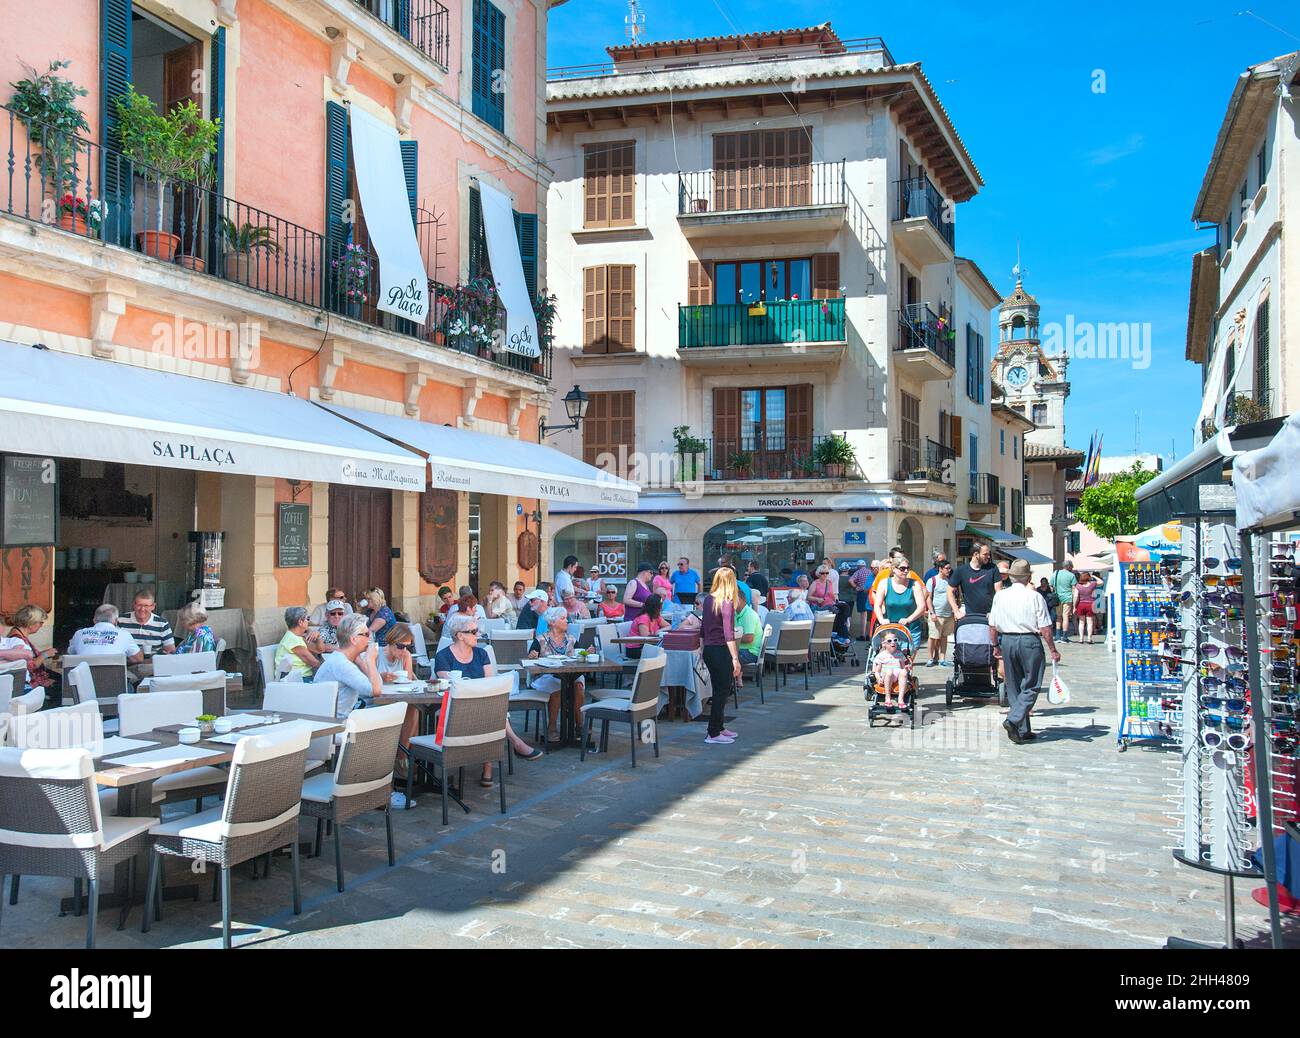 Vieille ville d'Alcudia avec terrasse de bar, Majorque, Baléares, Espagne Banque D'Images